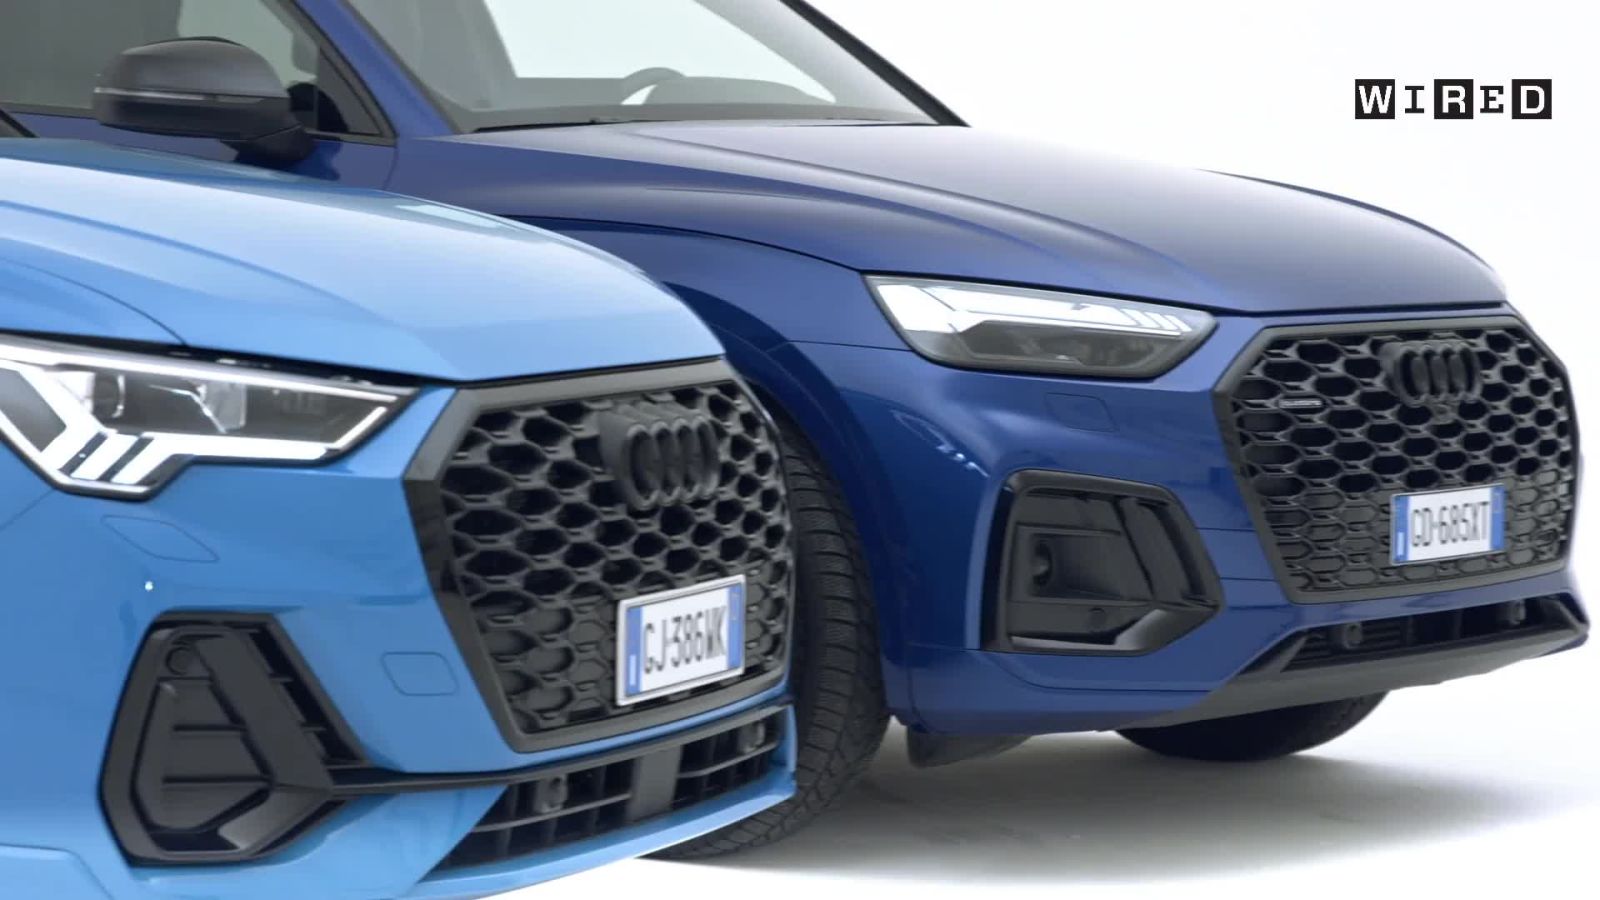 Audi va in nero e ridefinisce il design dei suoi sport utility